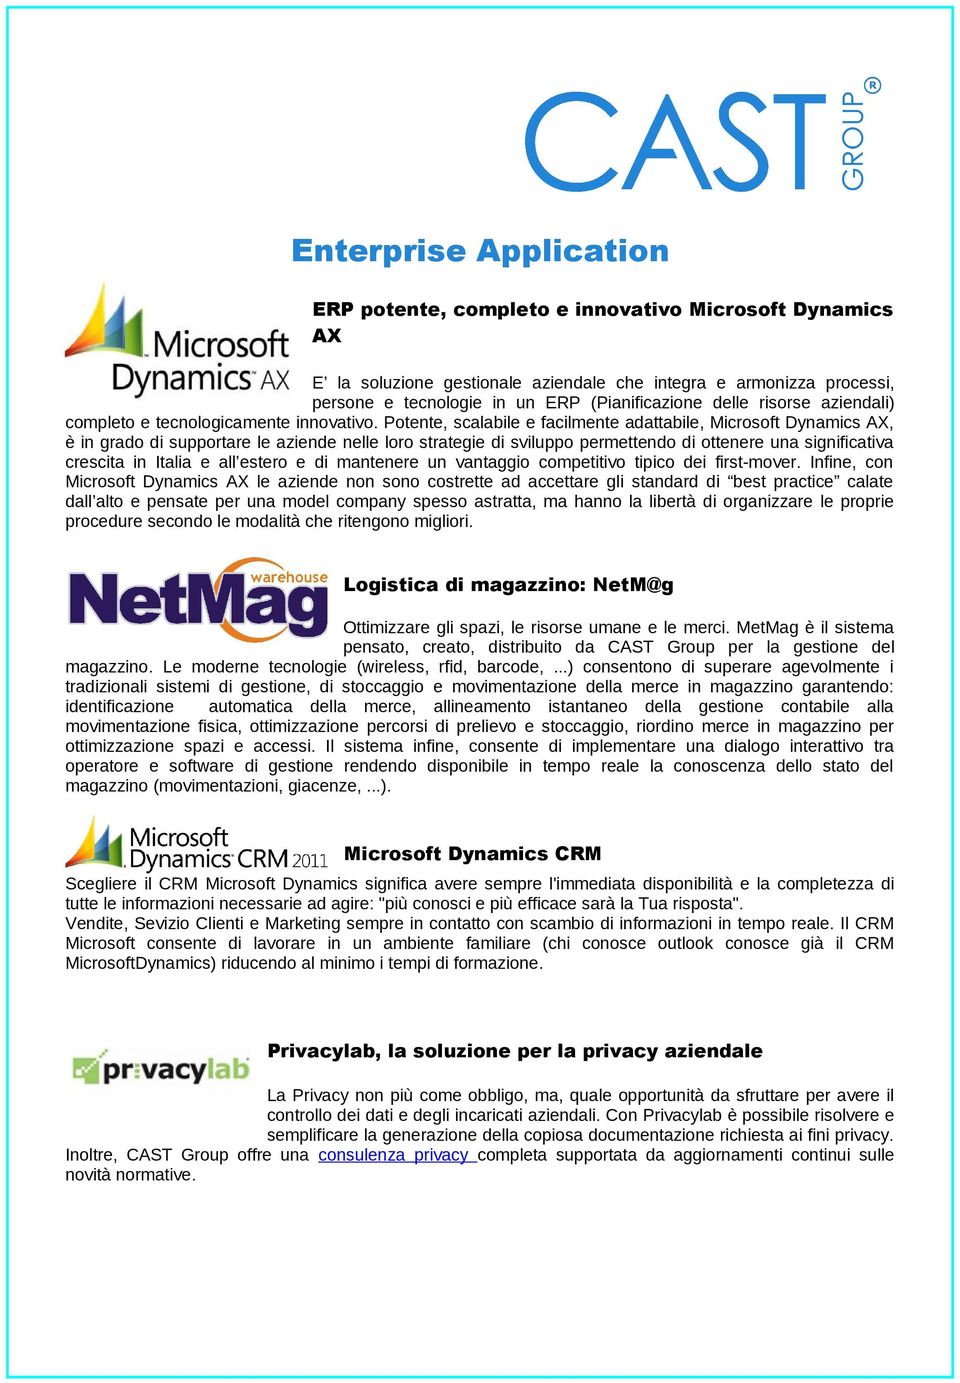 Potente, scalabile e facilmente adattabile, Microsoft Dynamics AX, è in grado di supportare le aziende nelle loro strategie di sviluppo permettendo di ottenere una significativa crescita in Italia e